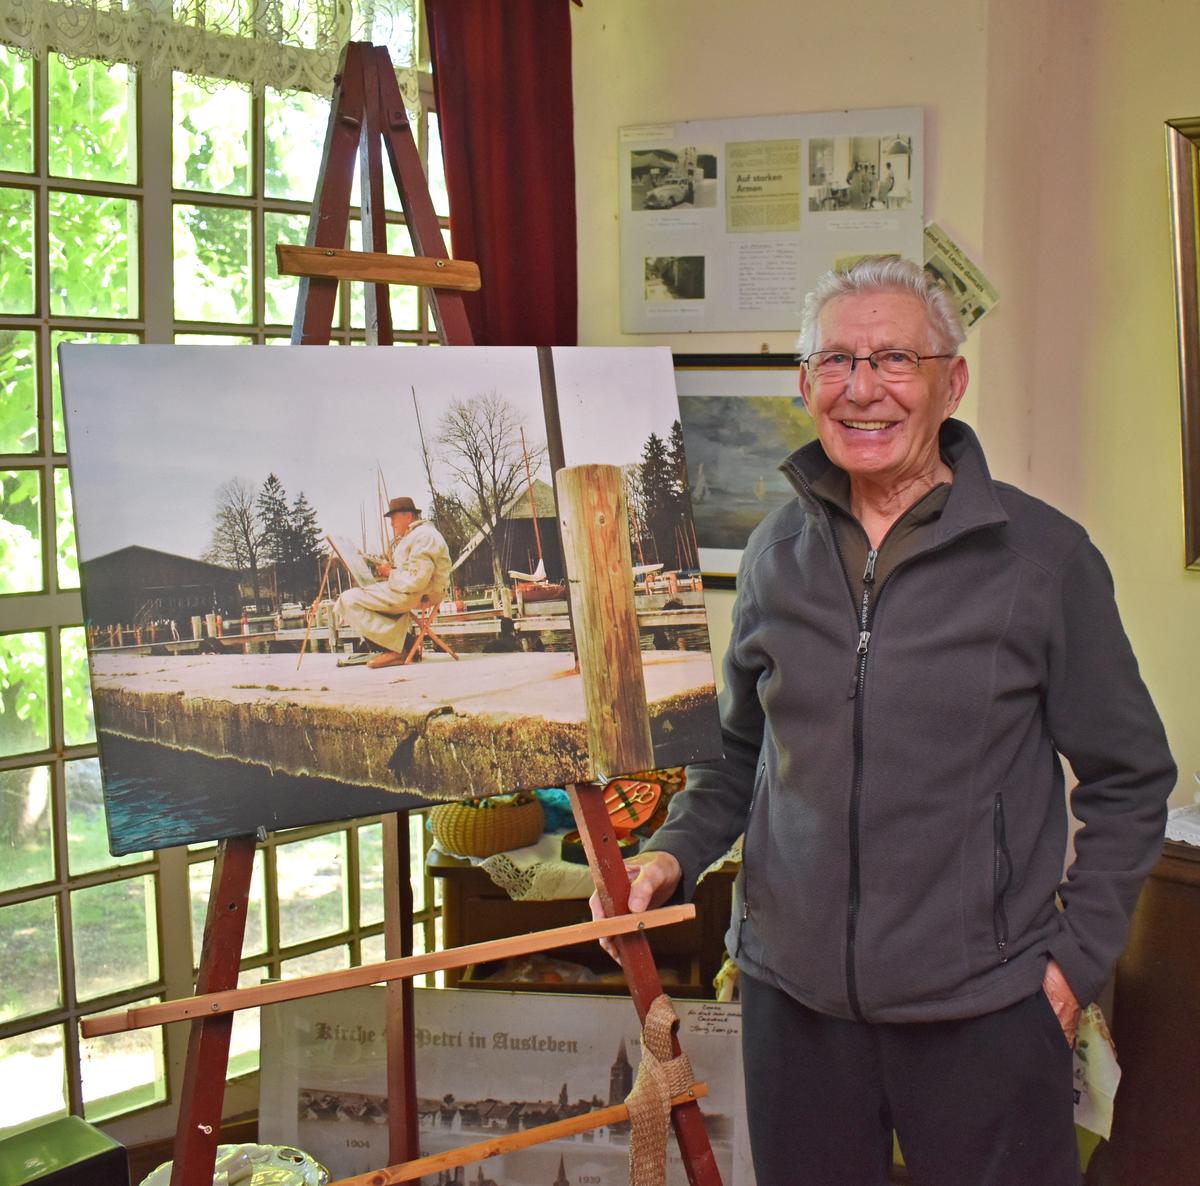 Freundeskreis-Chef Heinz Morgenthal präsentiert hier mit großer Freude ein Bild, auf dem der Ausleber Maler Heinrich Gans zu sehen ist, wie er am Starnberger See eines seiner Gemälde zeichnet.